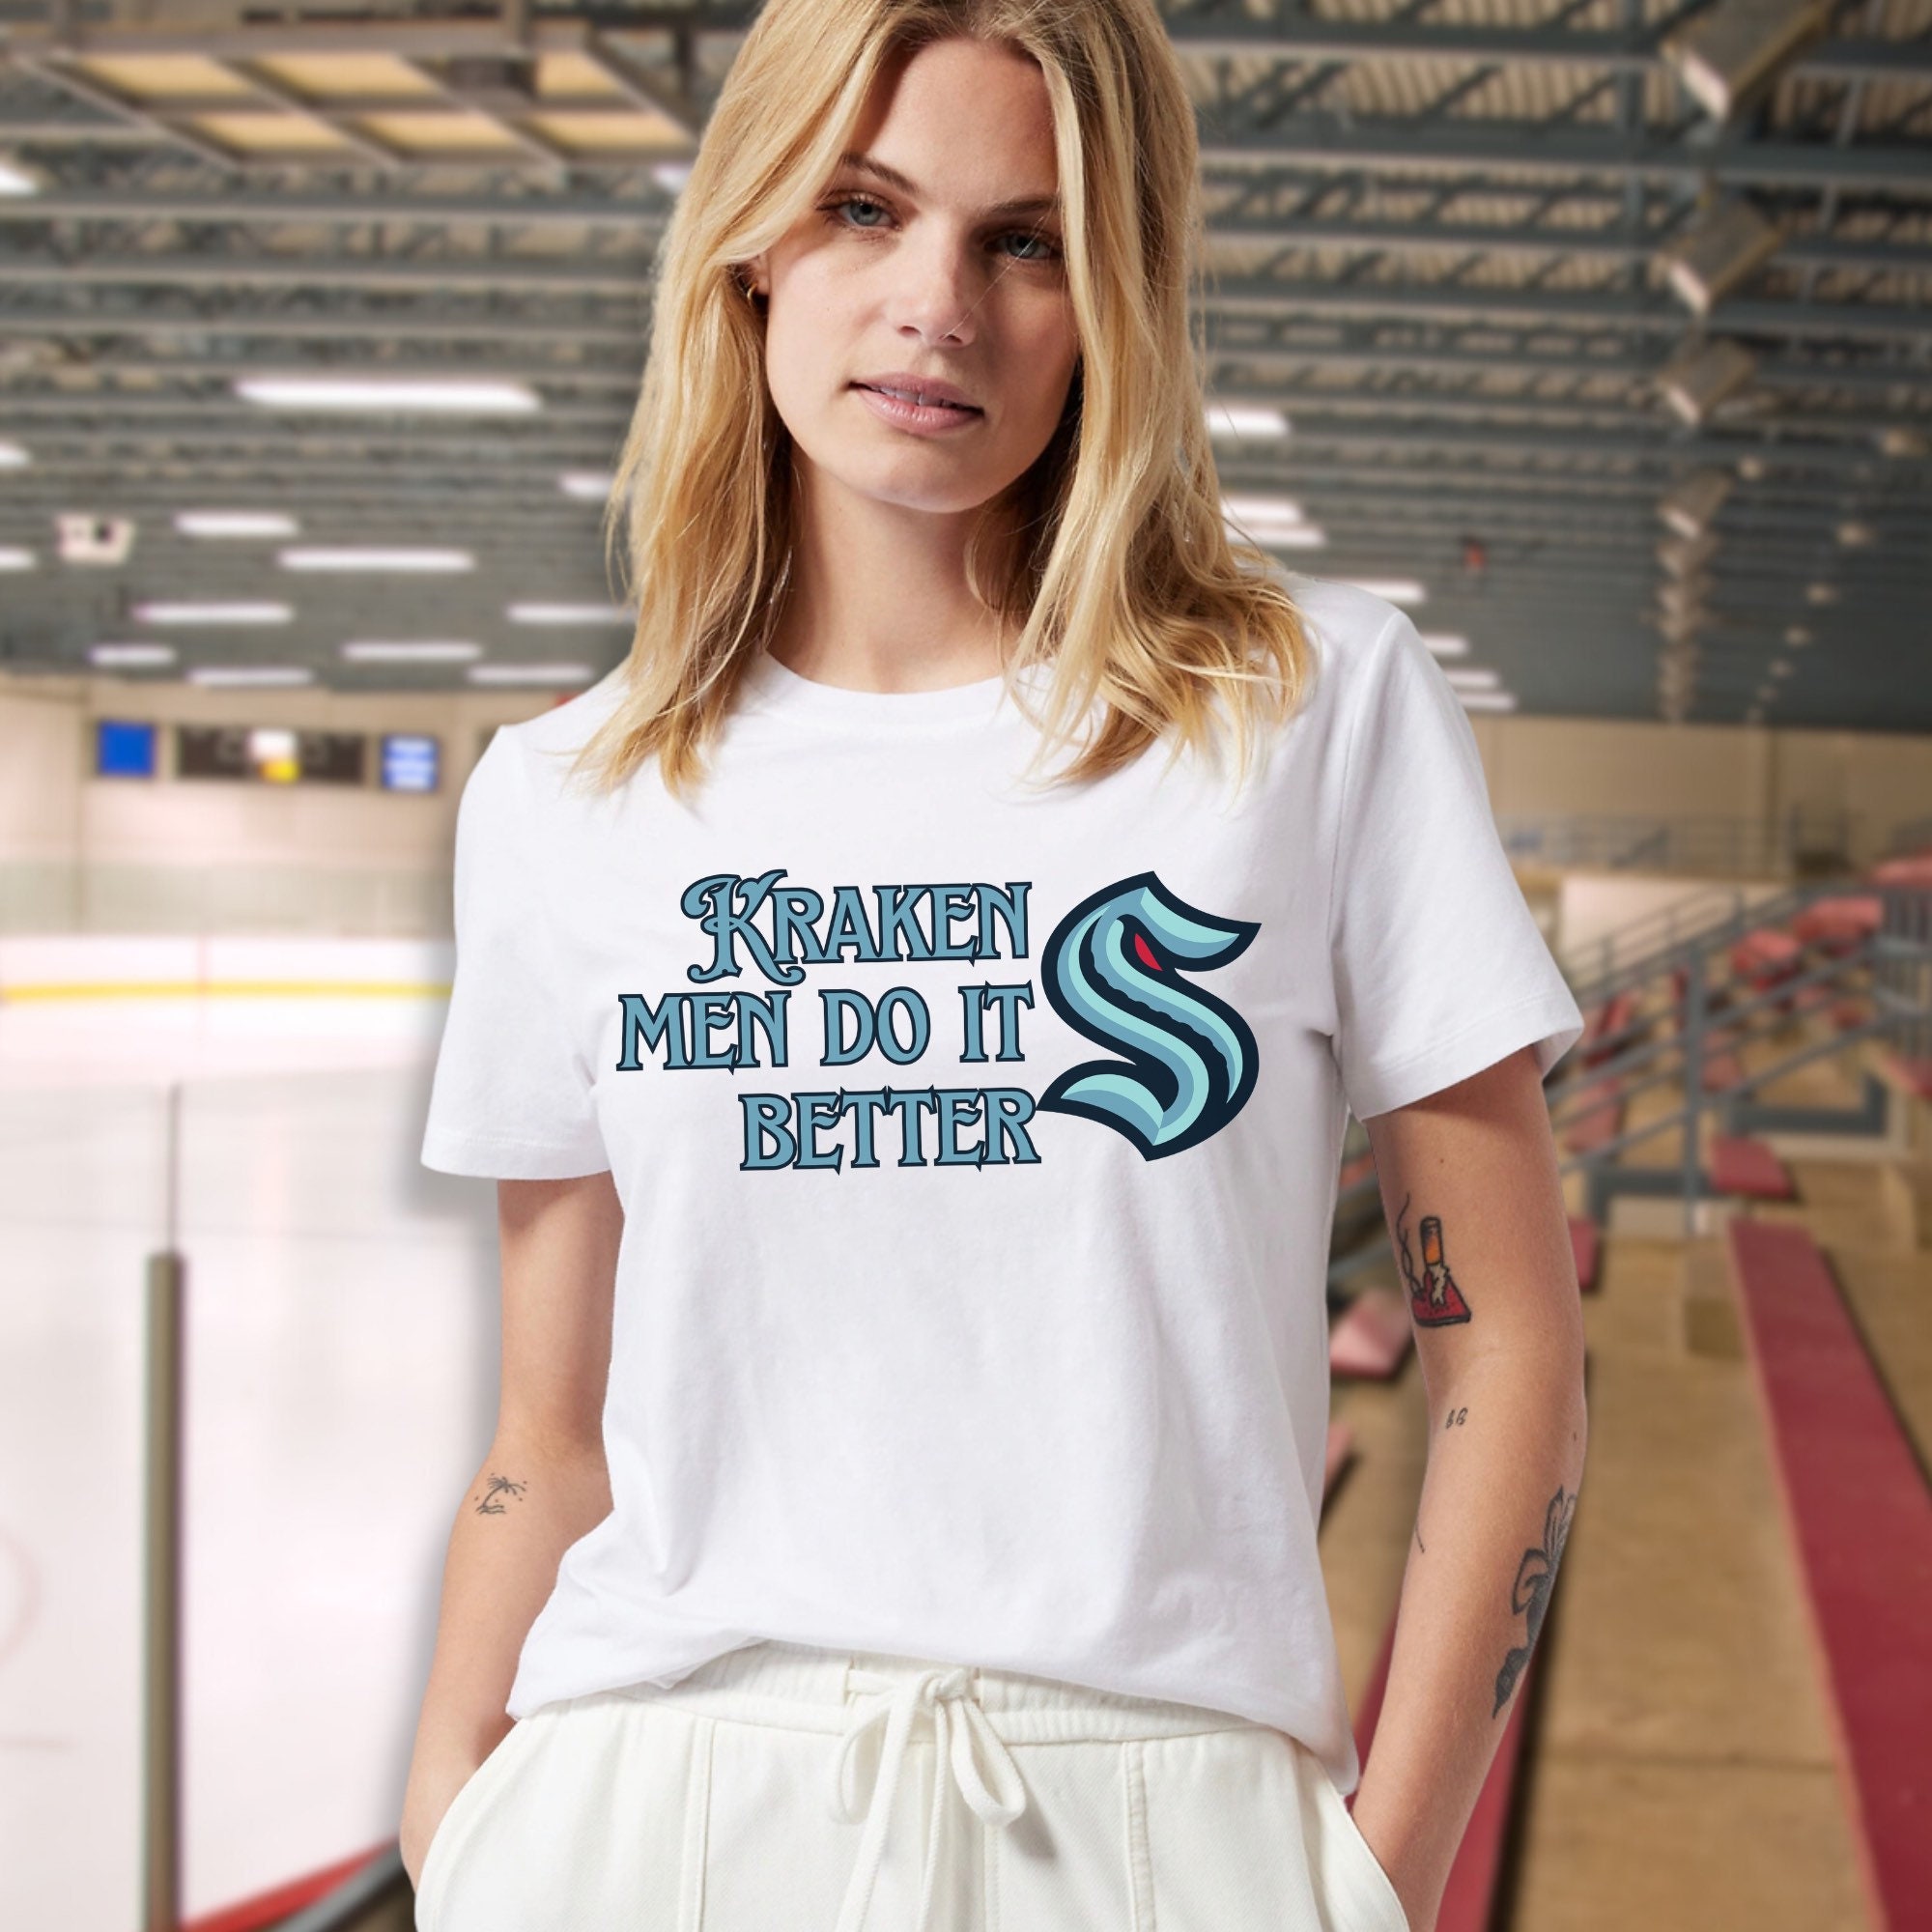 Seattle Kraken Retro Hockey Fan T-Shirt